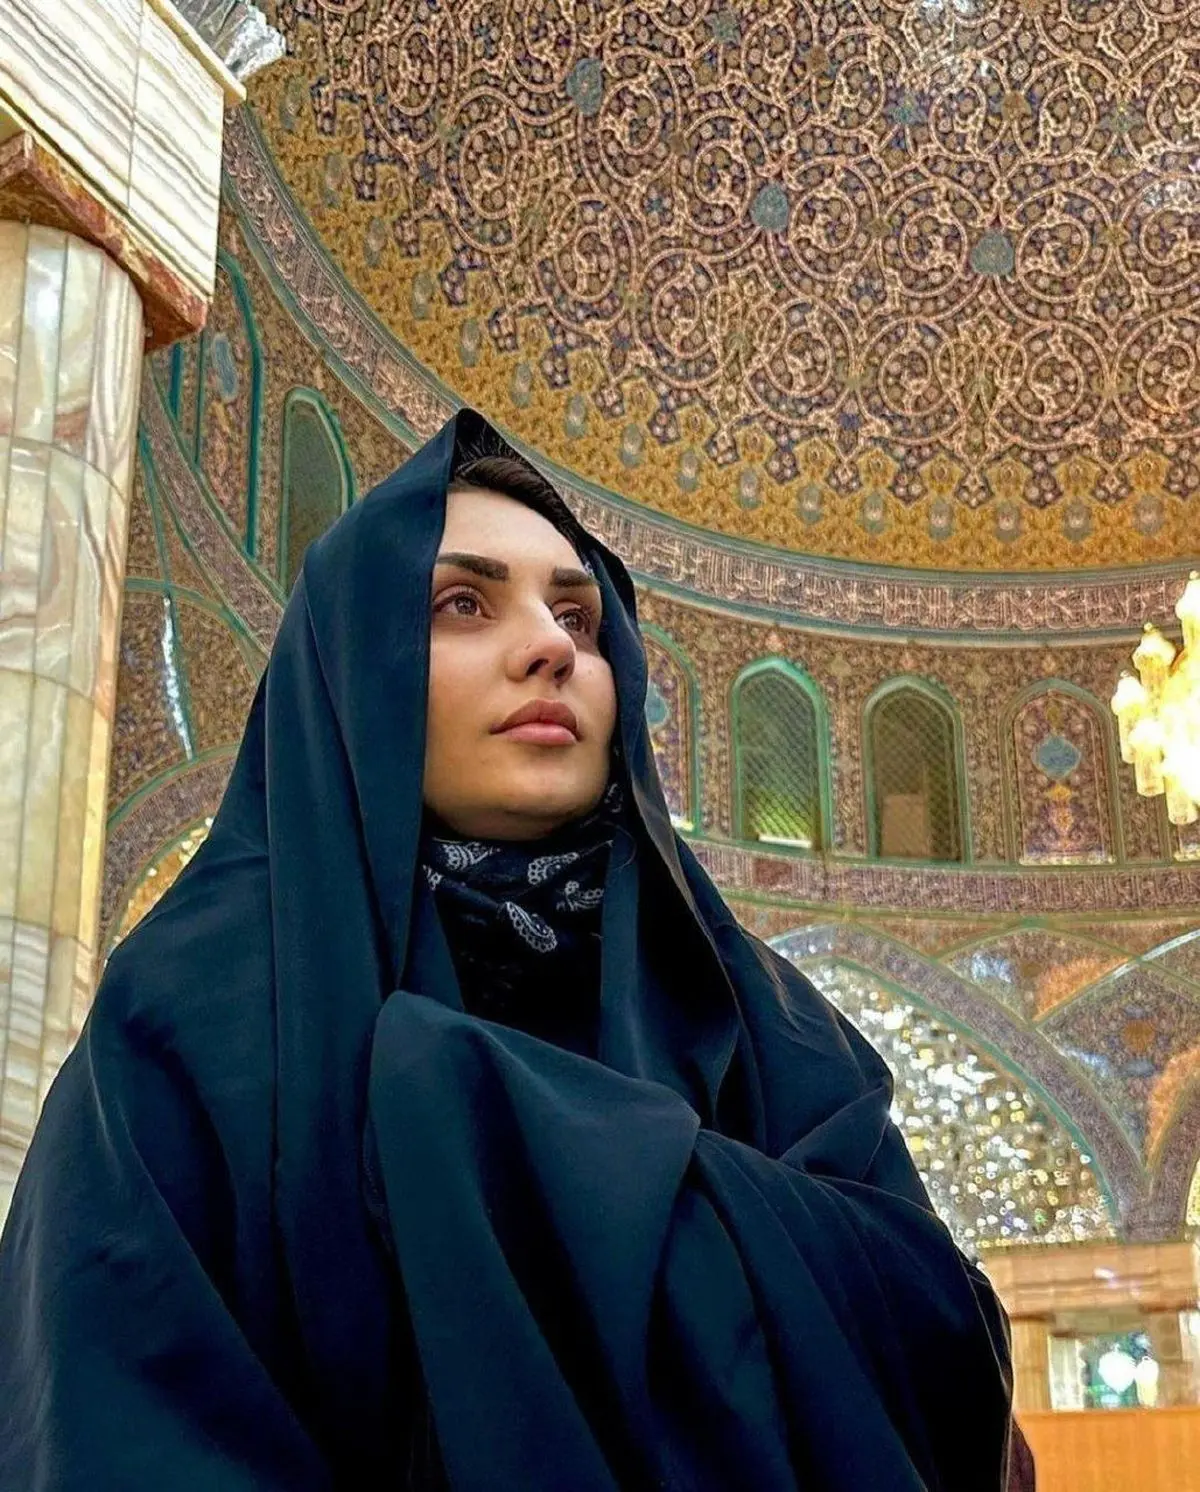 سفر زیارتی خواننده مشهور آذربایجانی در ایران + عکس